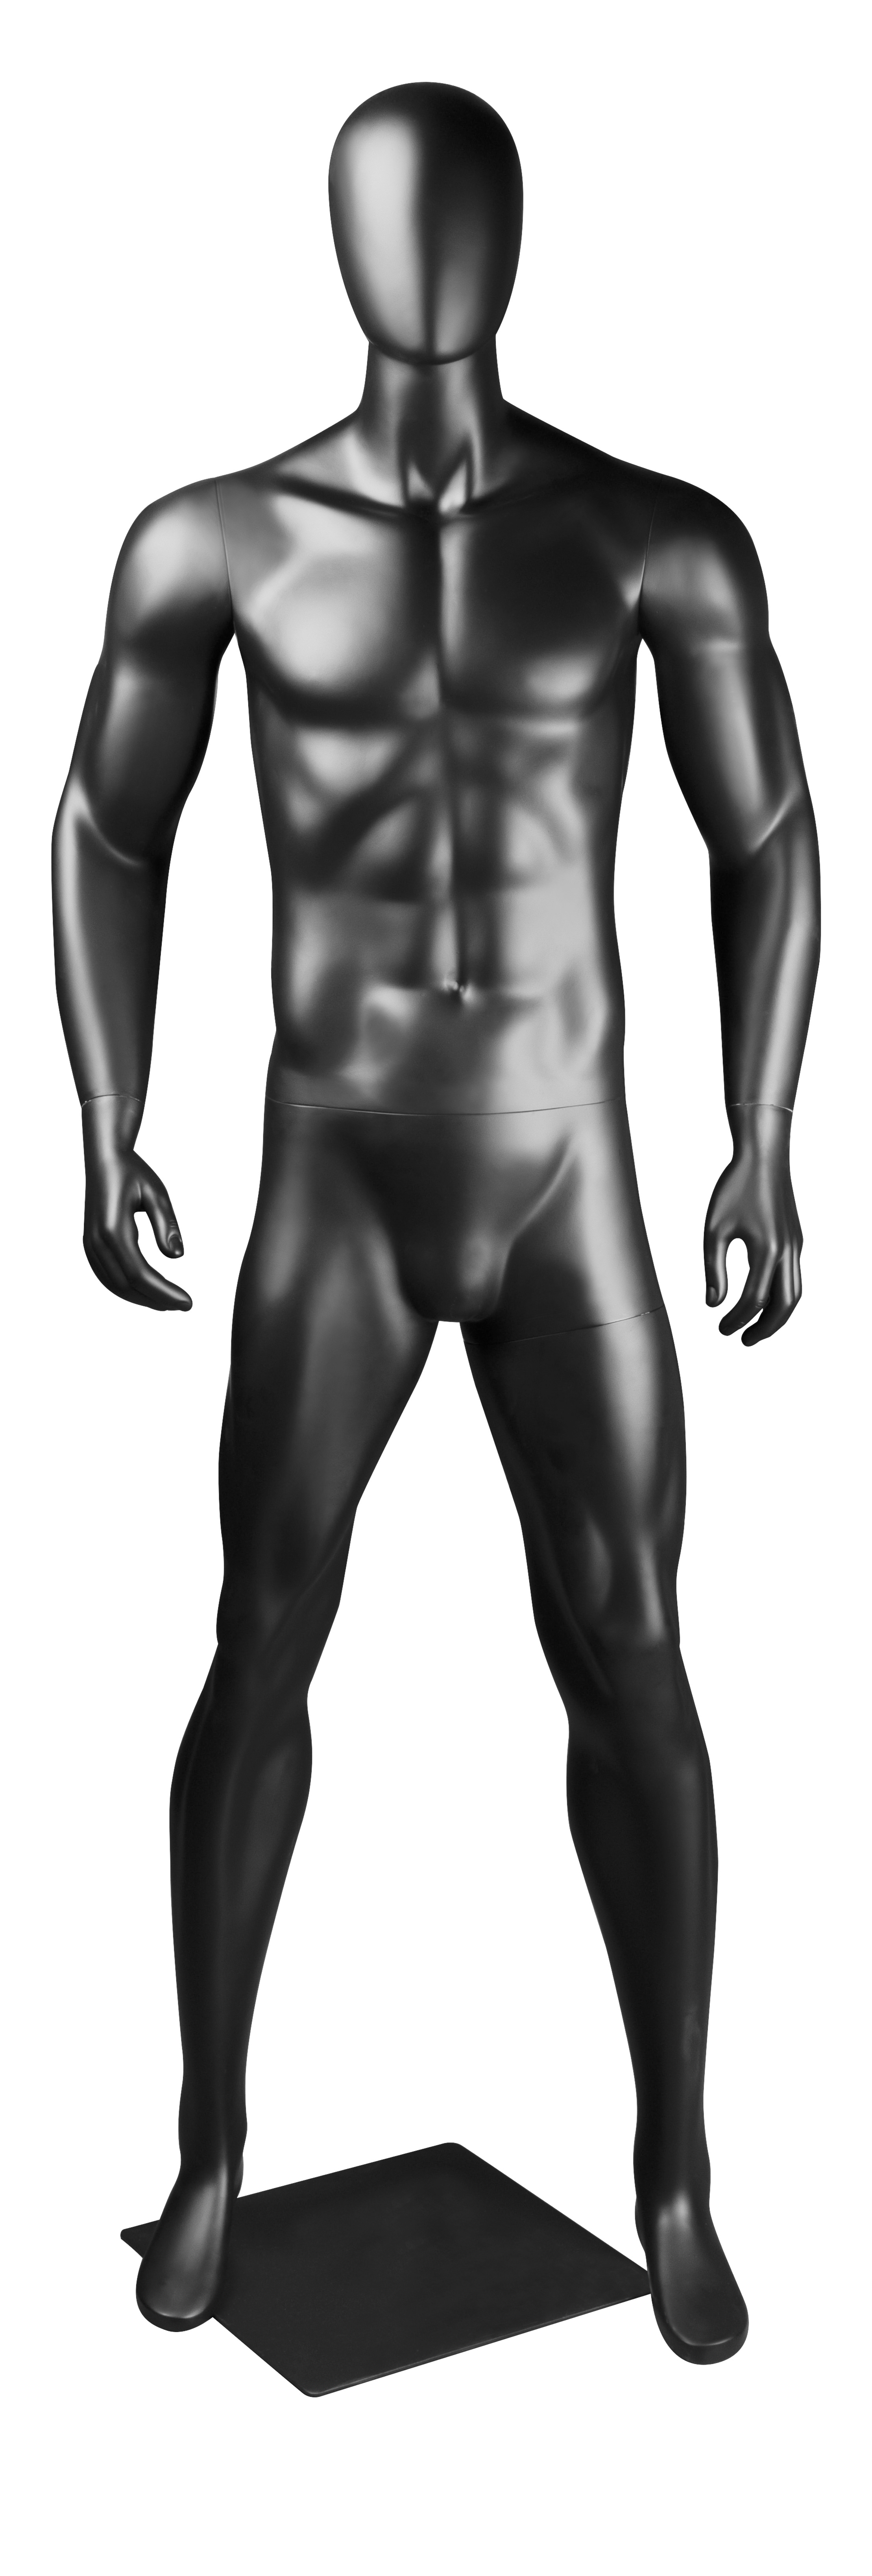 figurína pánská, vzpřímený postoj, černá matná